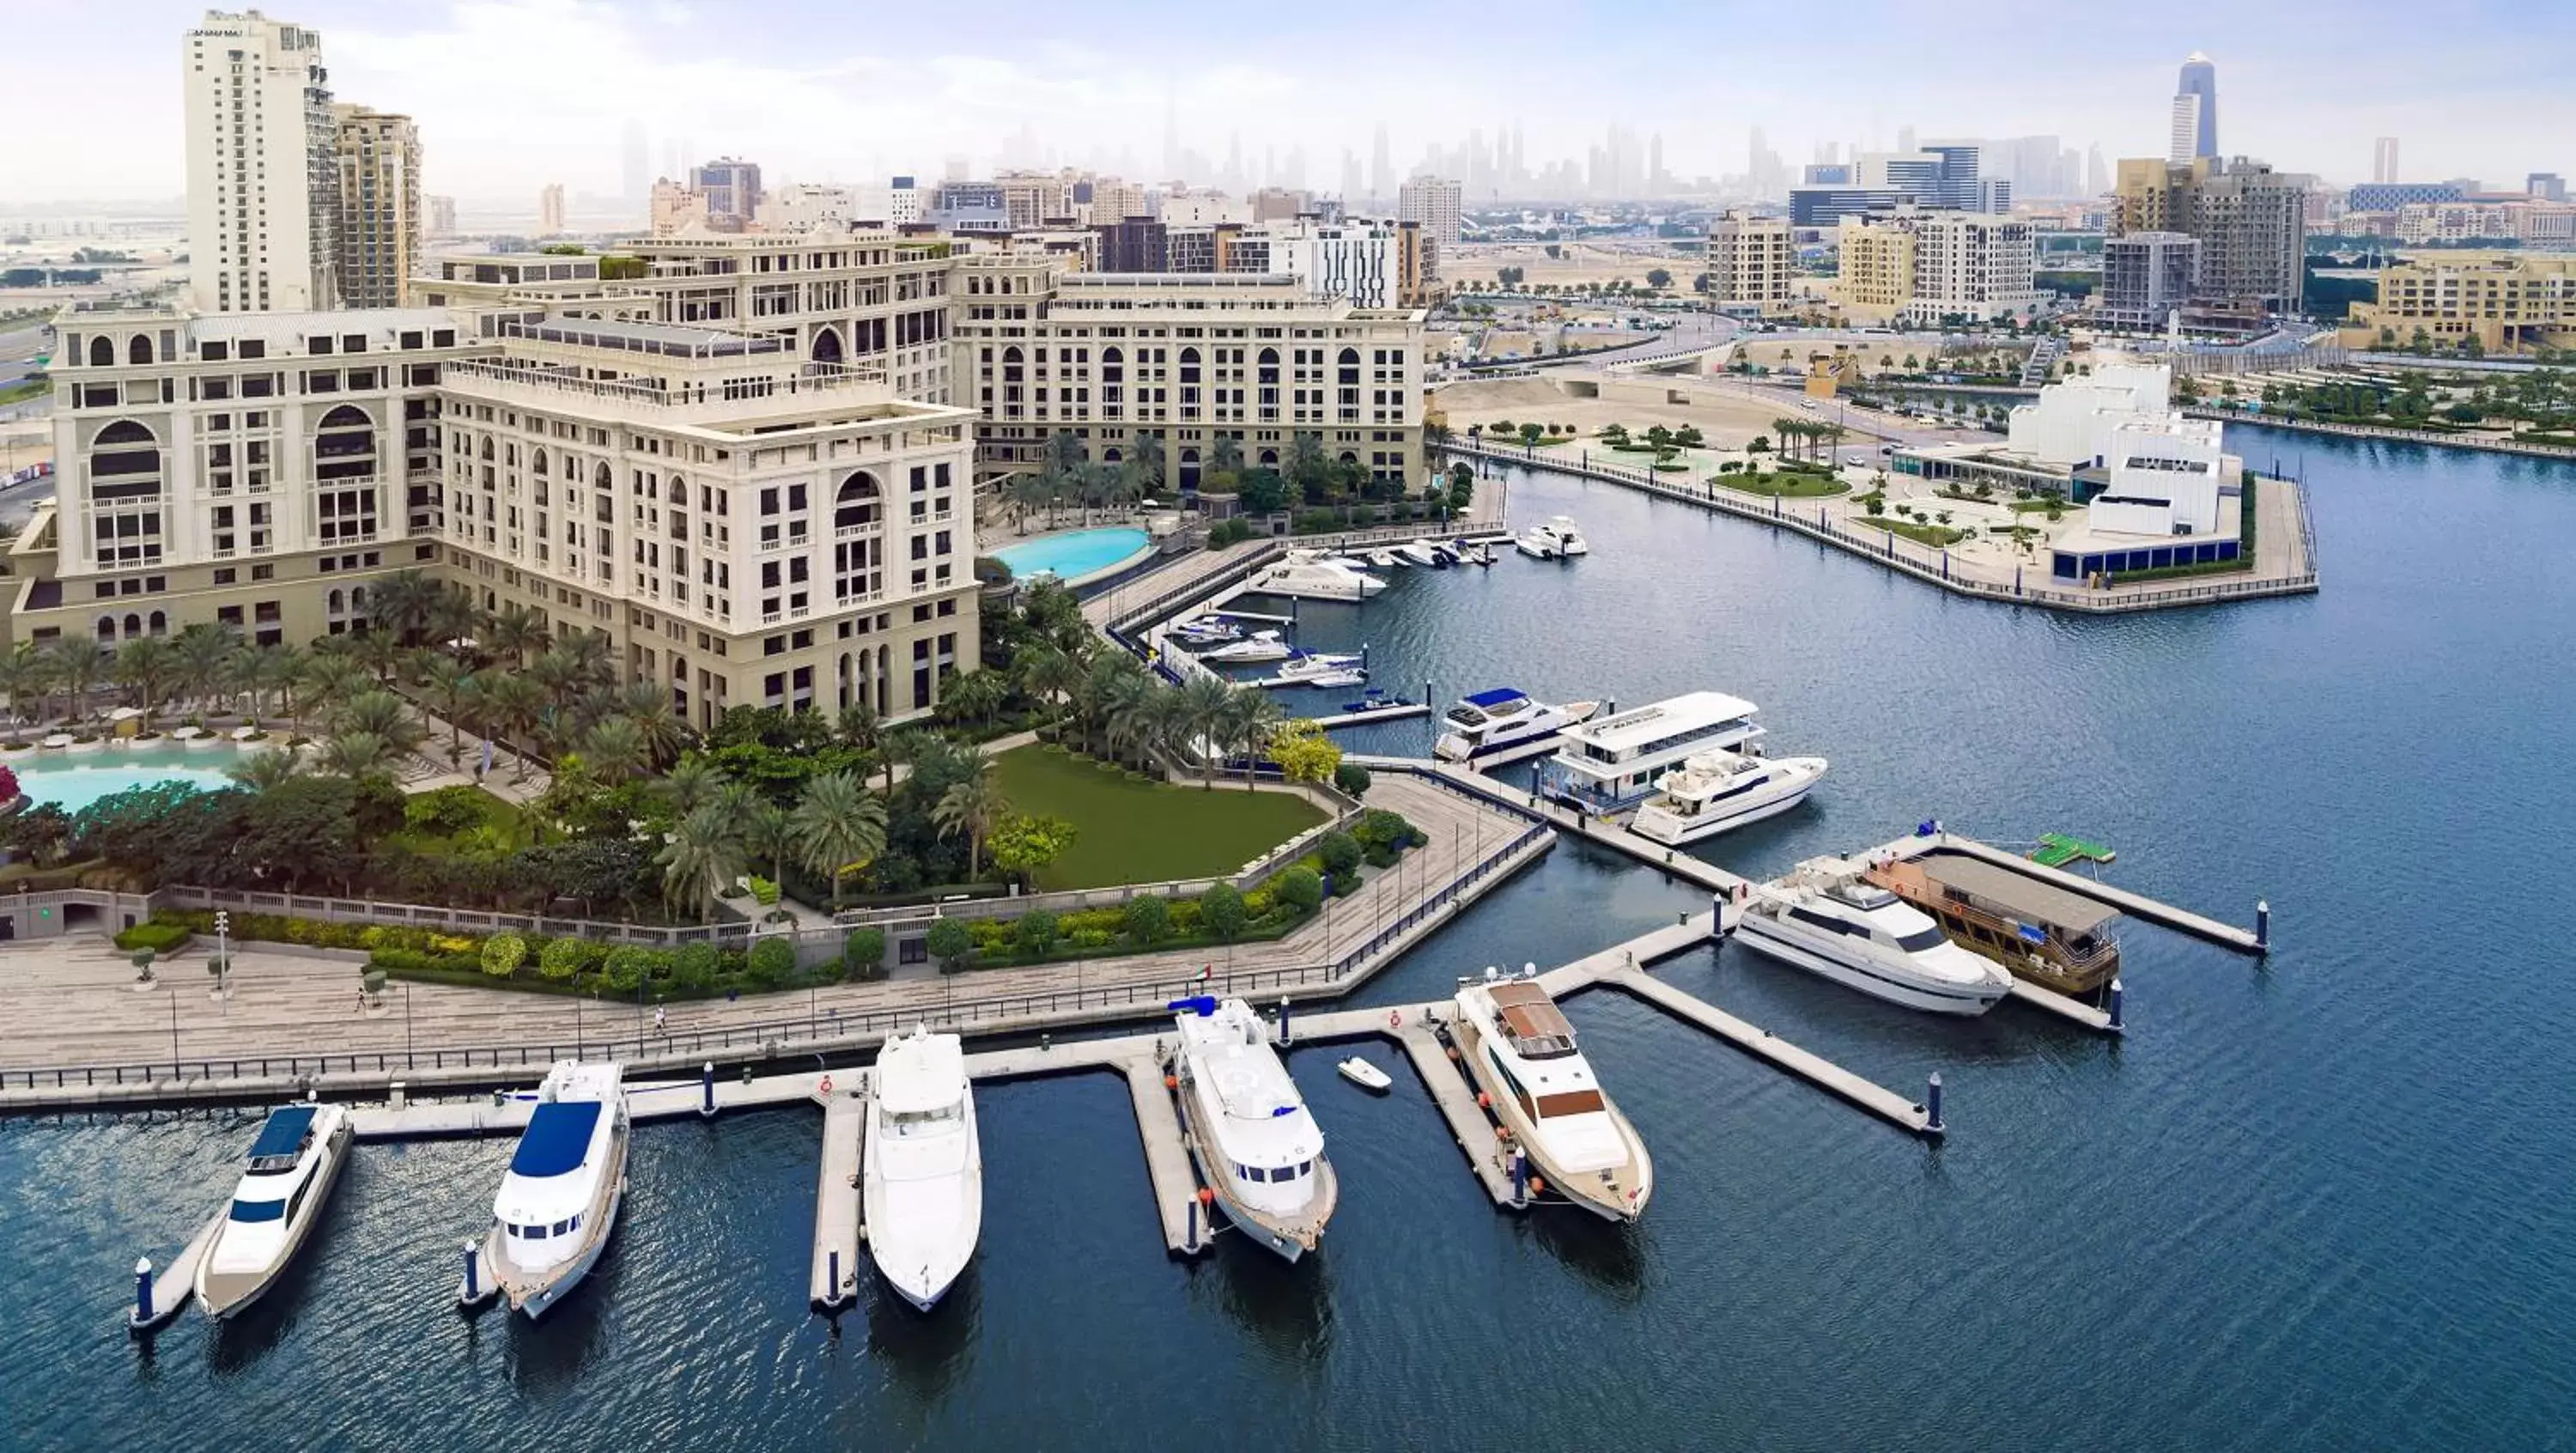 Day, Bird's-eye View in Palazzo Versace Dubai